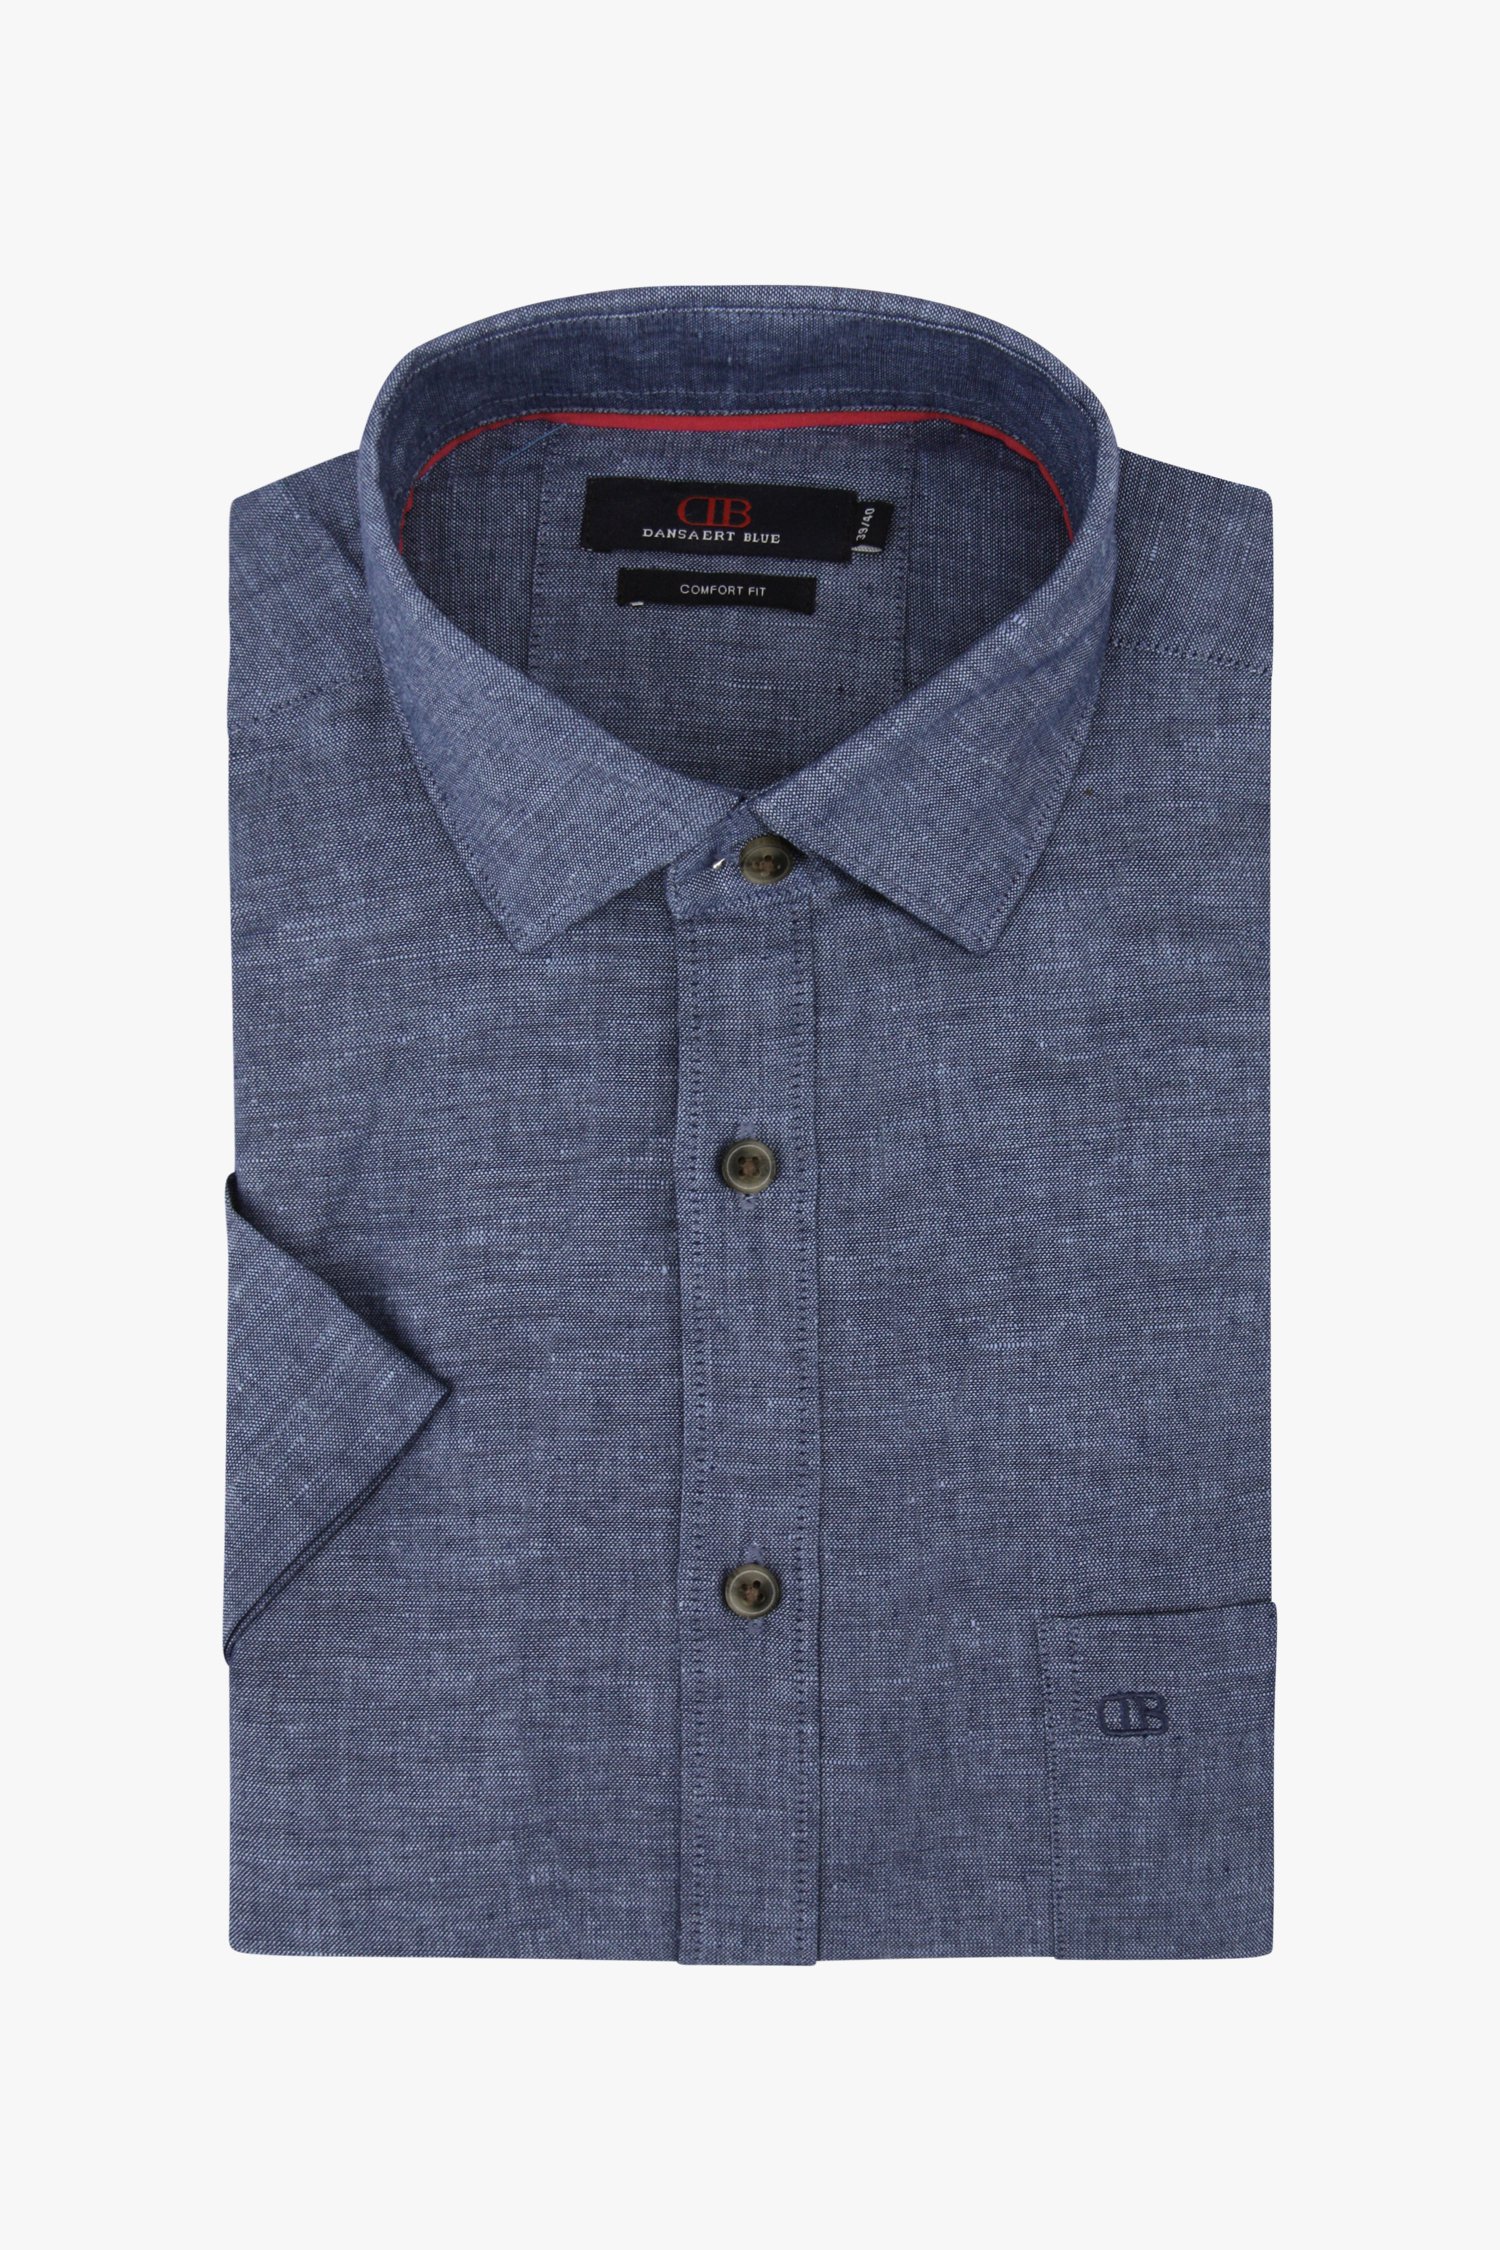 Chemise bleu foncé, aspect lin - comfort fit de Dansaert Blue pour Hommes